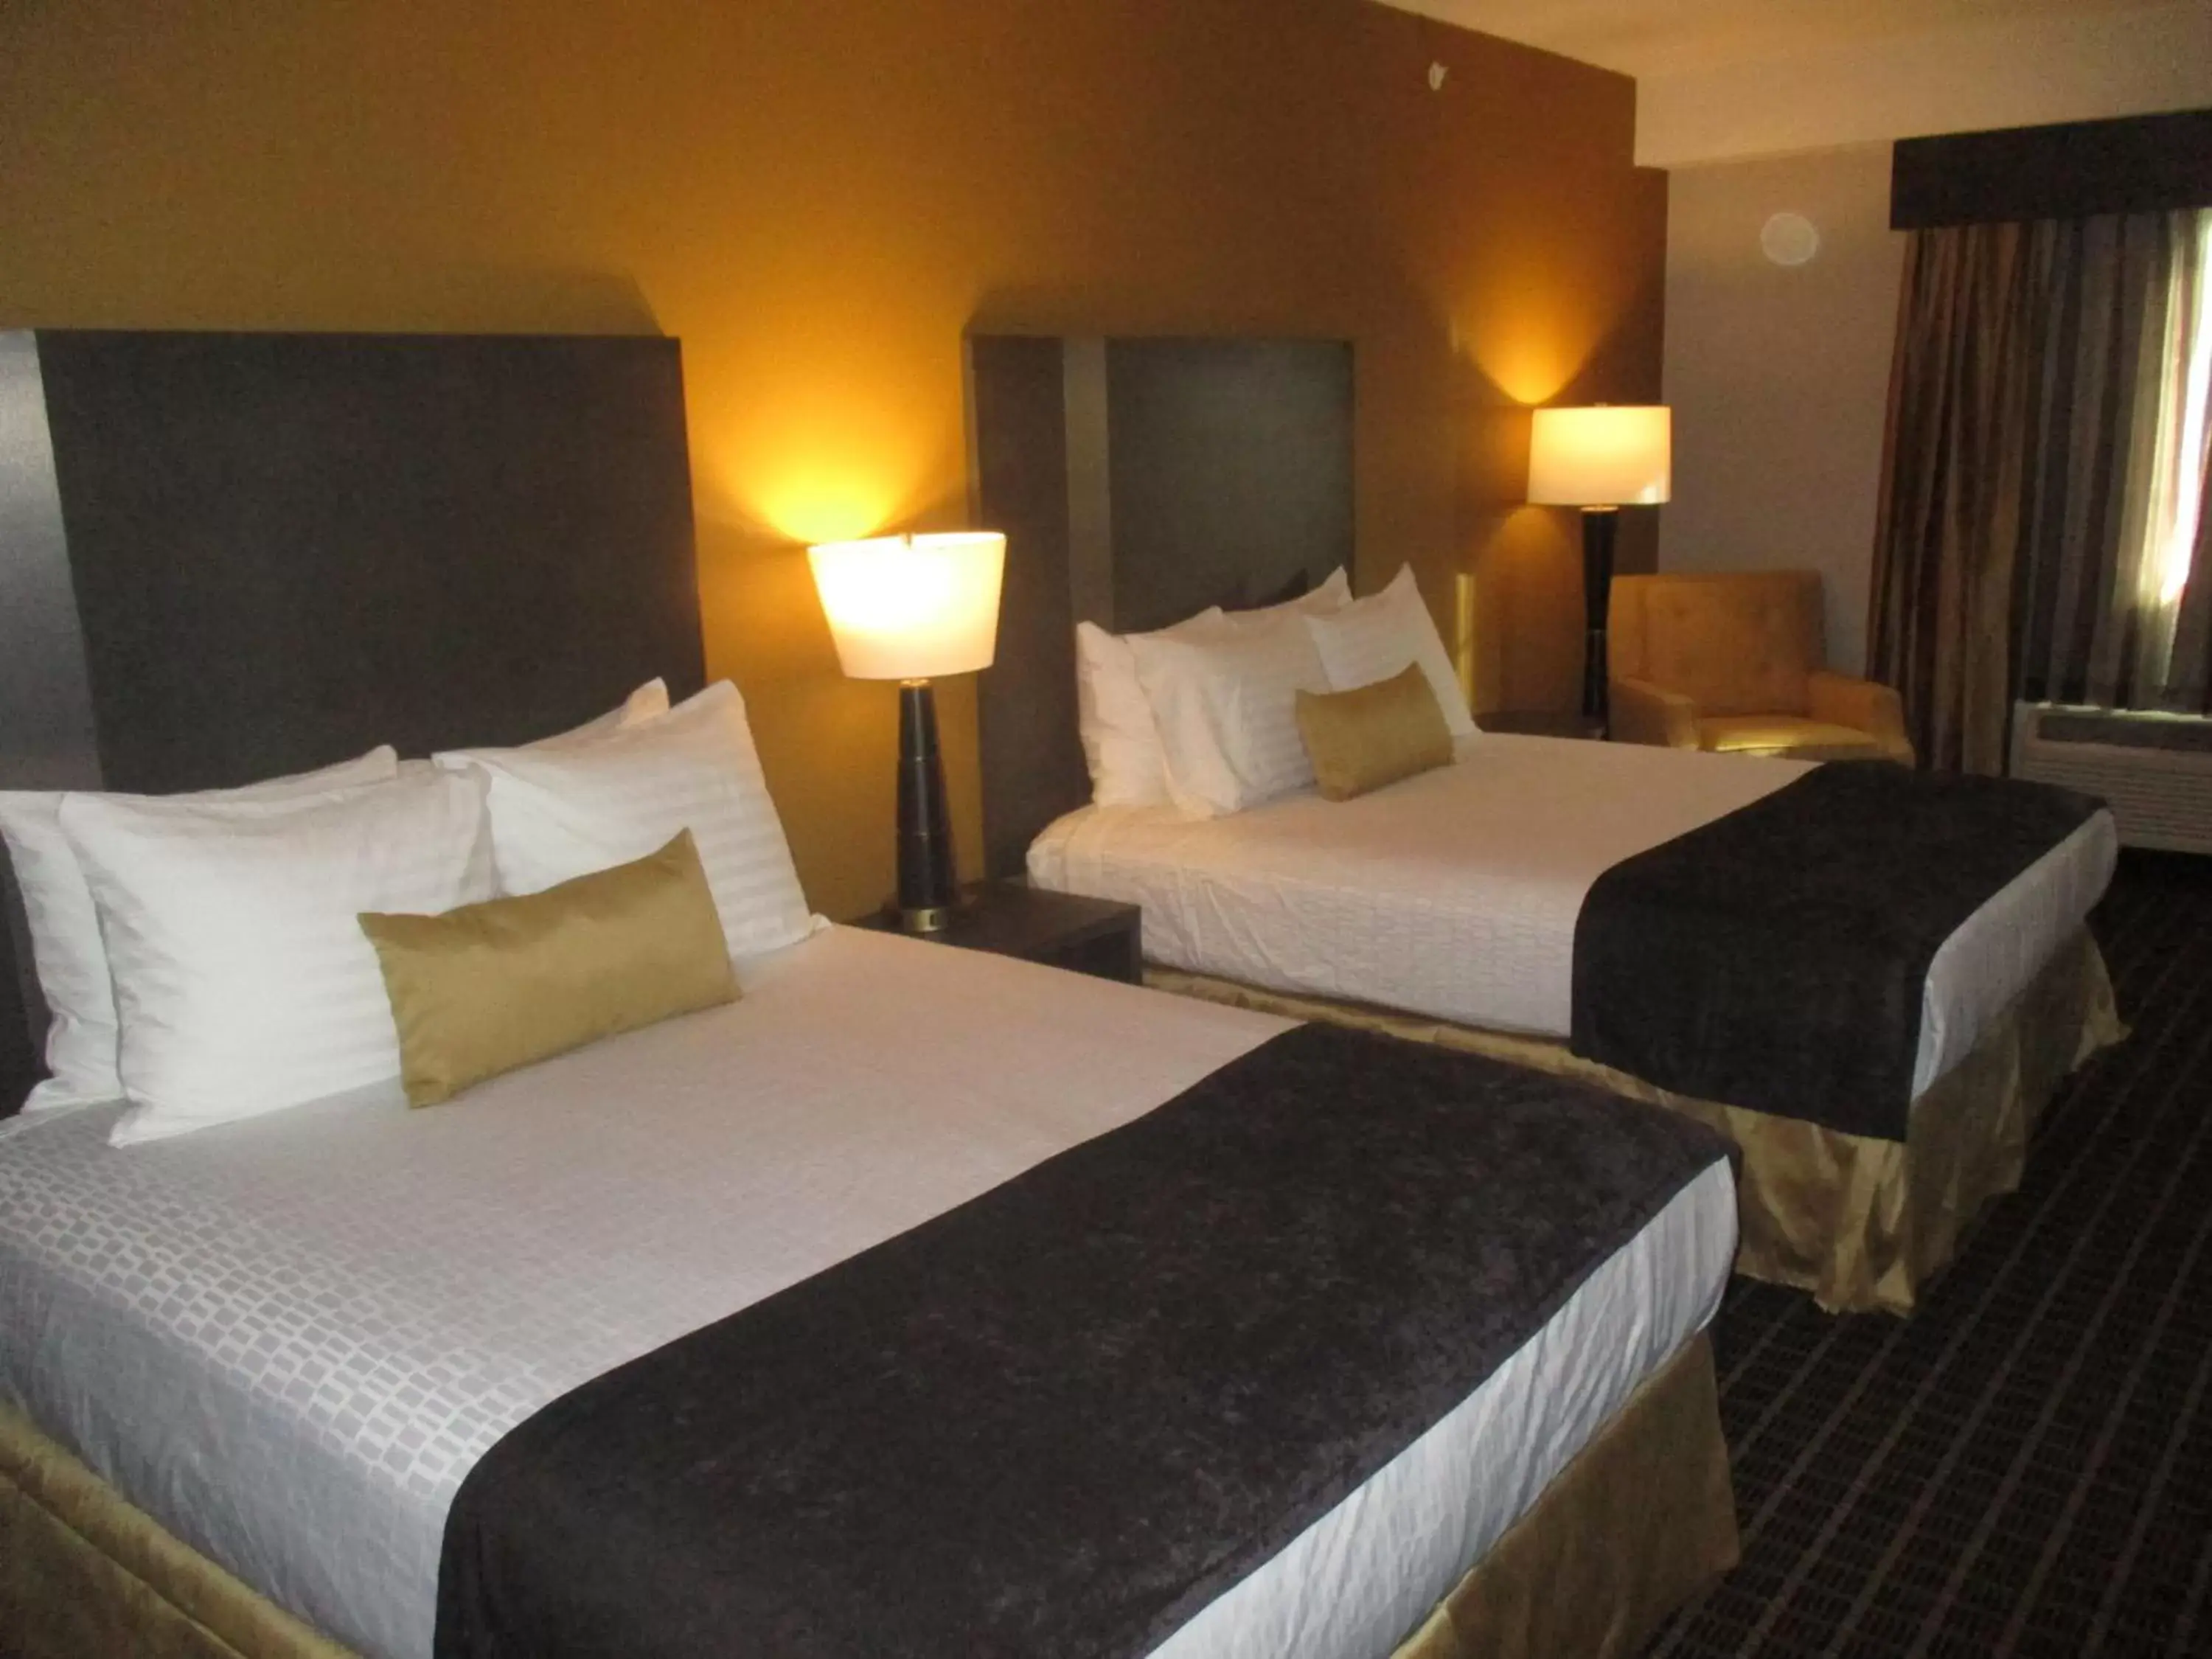 Bedroom, Bed in Best Western Plus Lampasas Inn & Suites